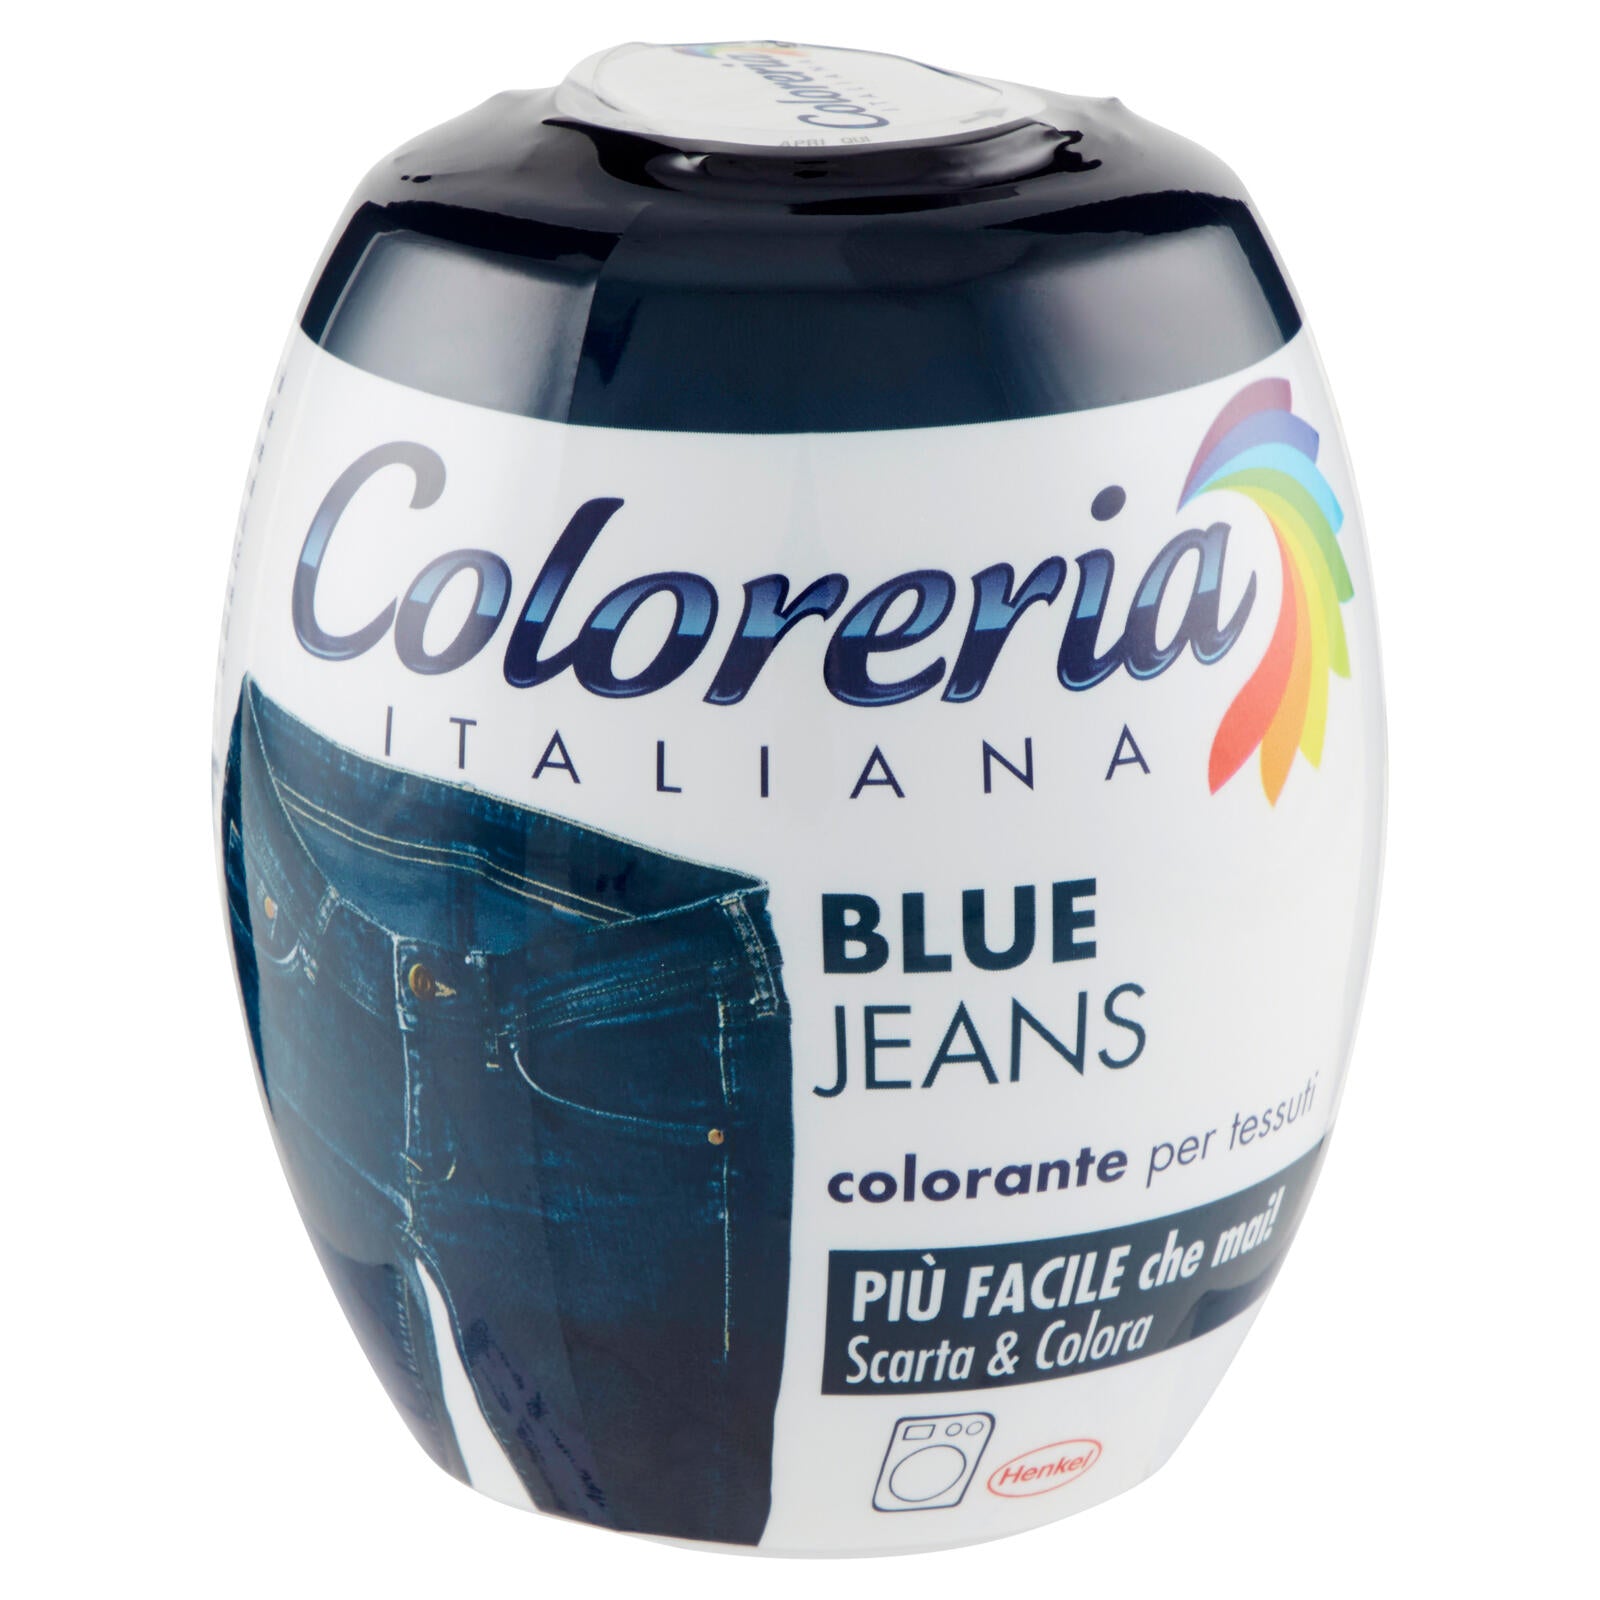 3pz Coloreria Italiana Colorante per tessuti Blue Jeans + Nero Intenso  350gr